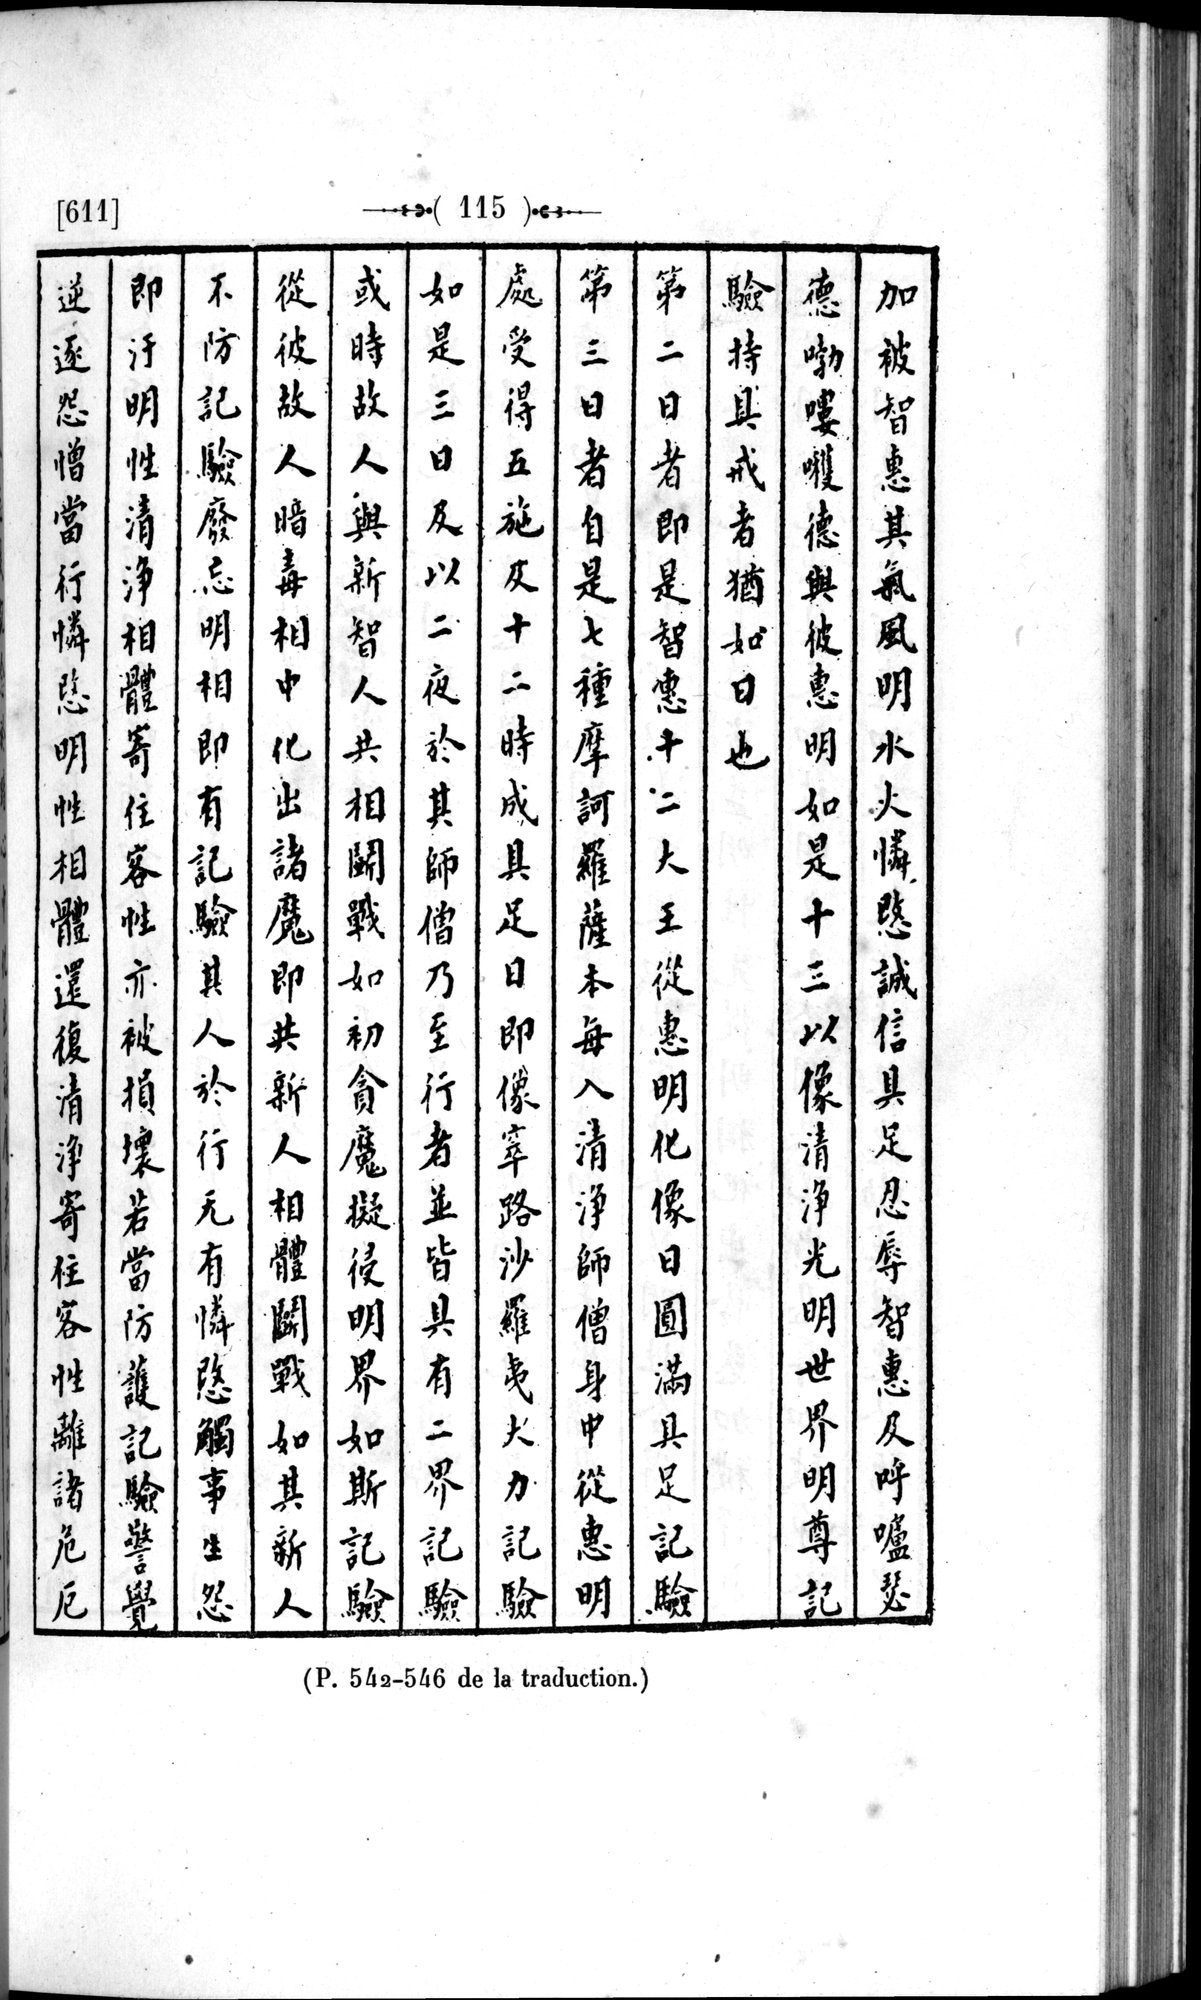 Un traité manichéen retrouvé en Chine : vol.1 / Page 125 (Grayscale High Resolution Image)